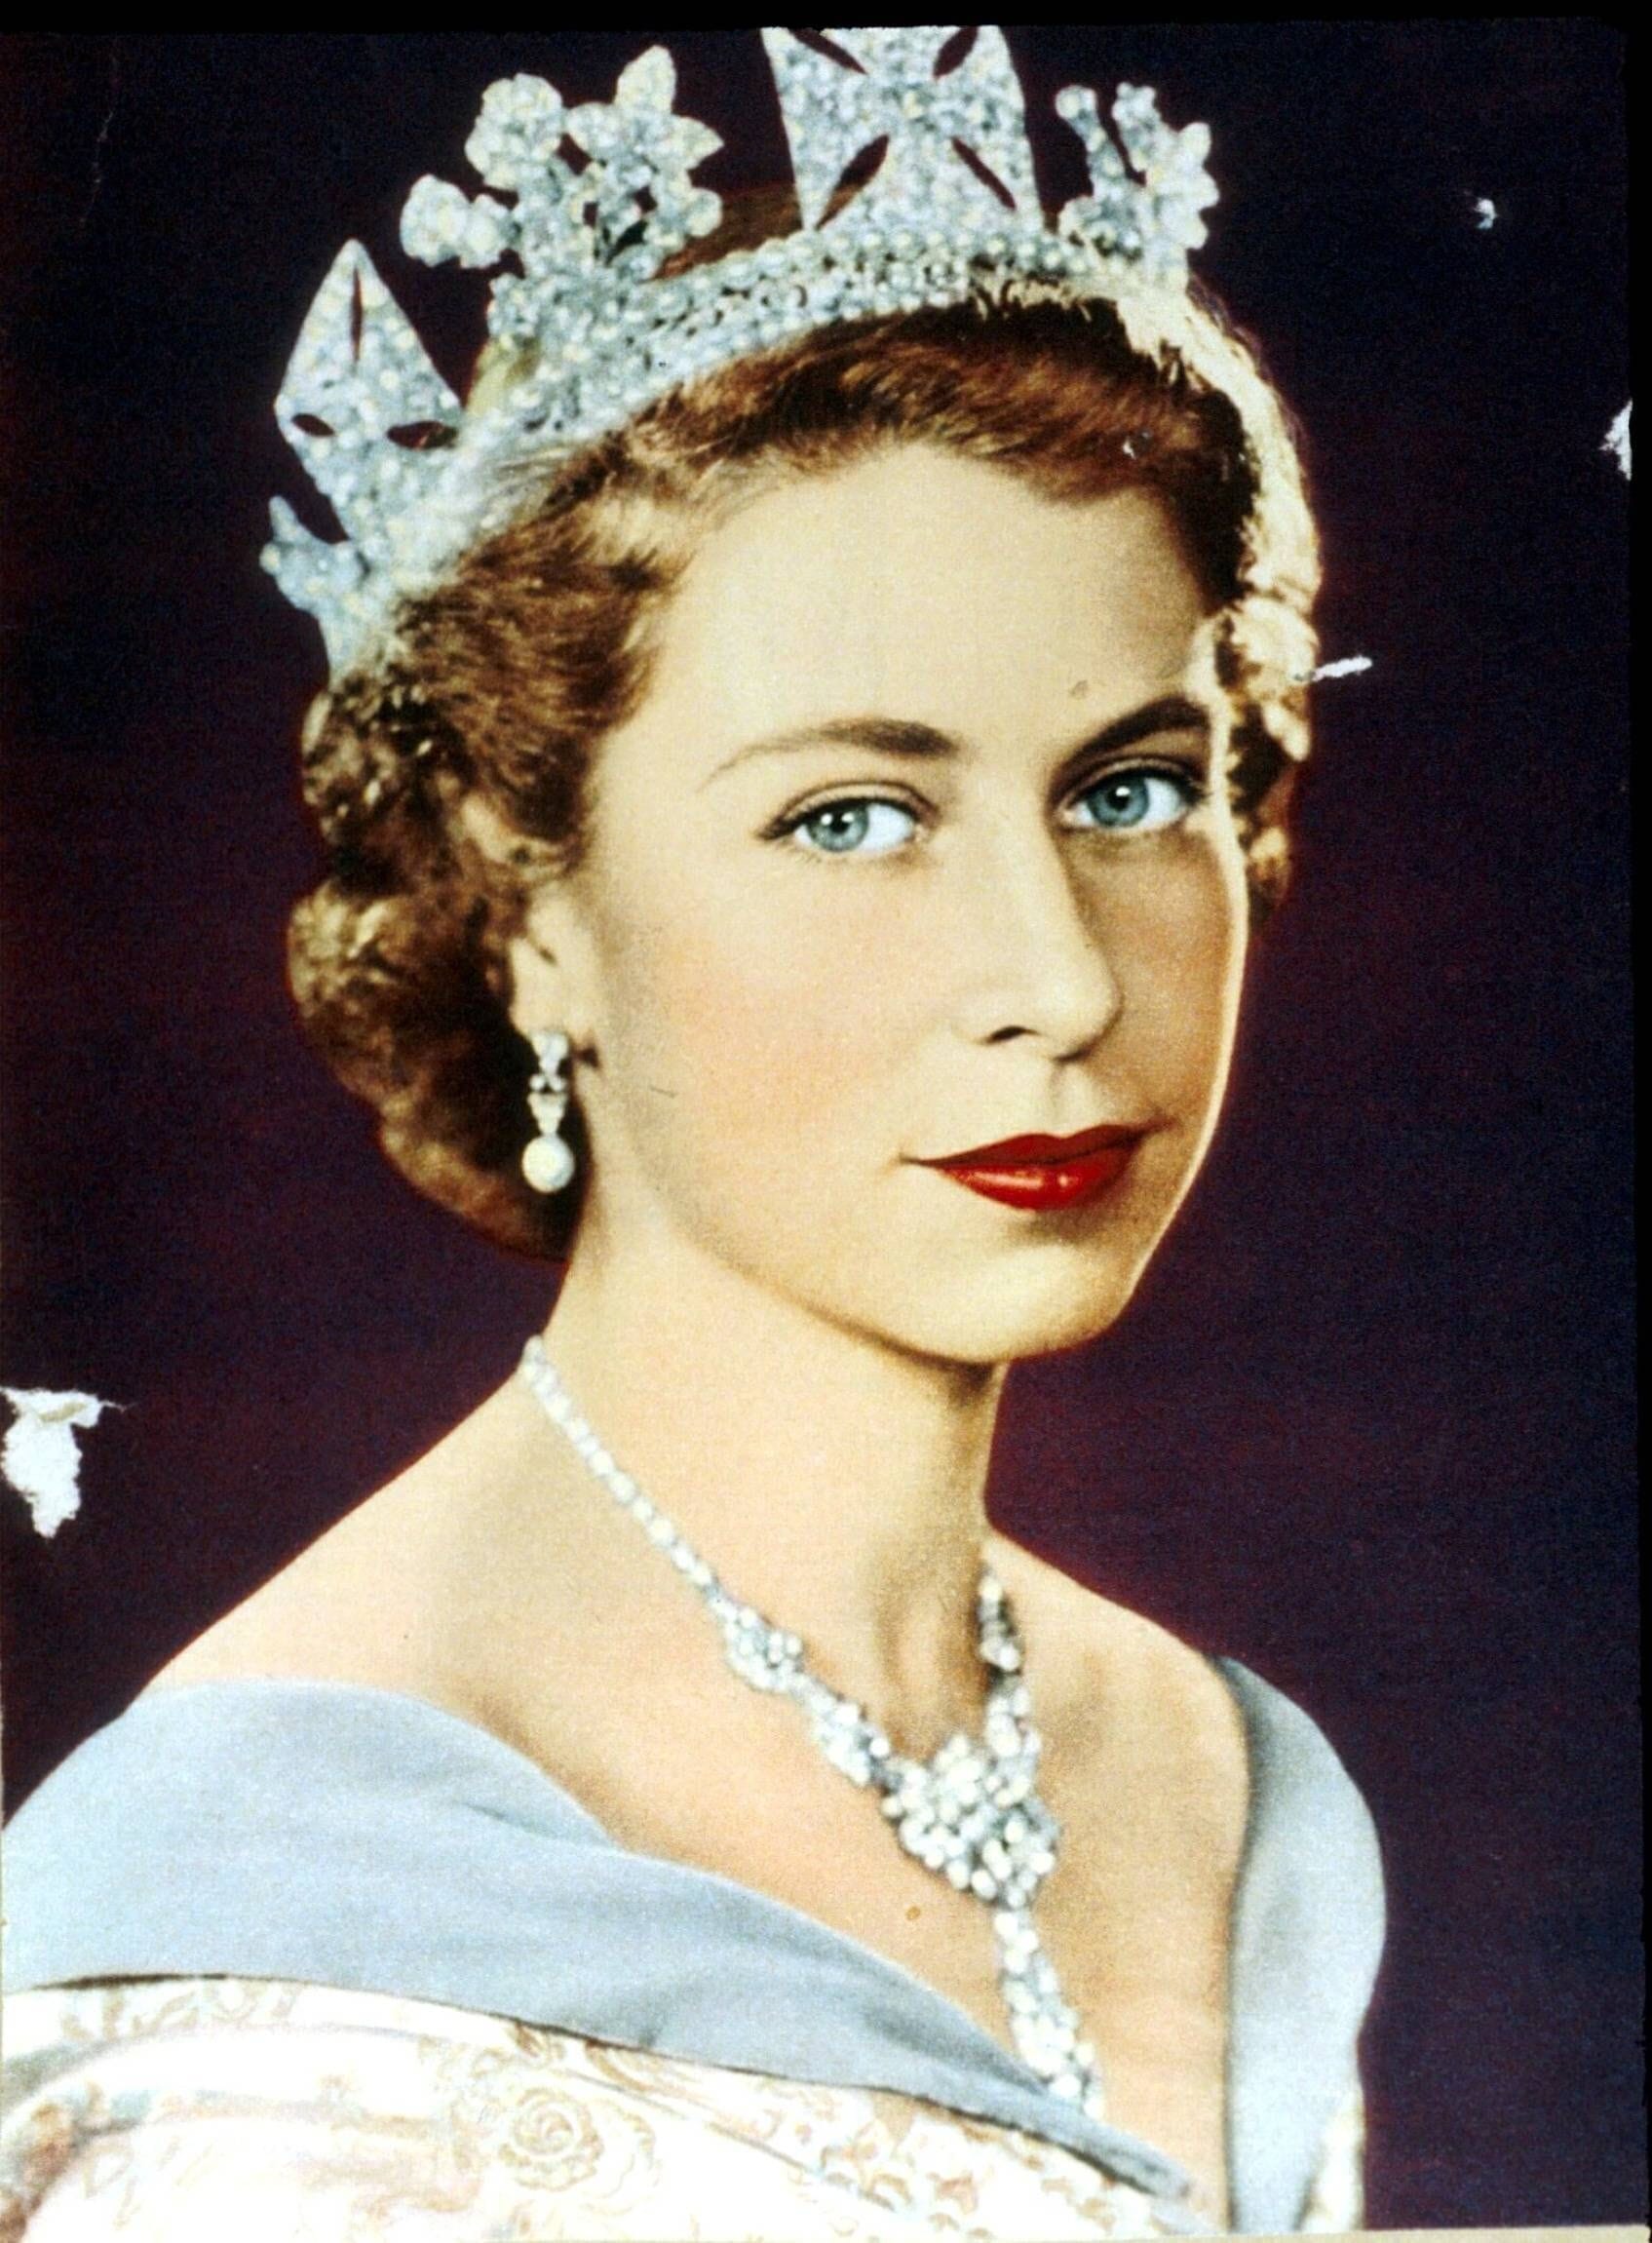 Ein Porträt von Queen Elizabeth II. aus dem Jahr 1952